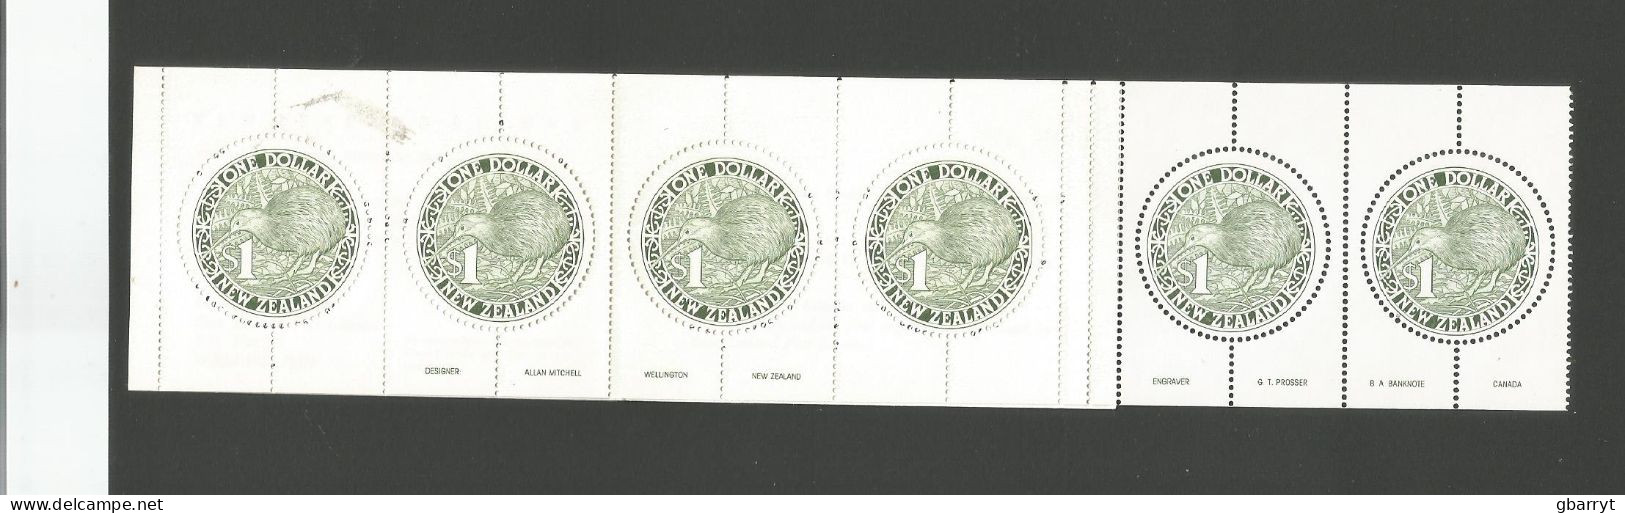 New Zealand > Booklets Scott # 918 Complete Booklet Kiwi.MNH VF.................w47 - Postzegelboekjes